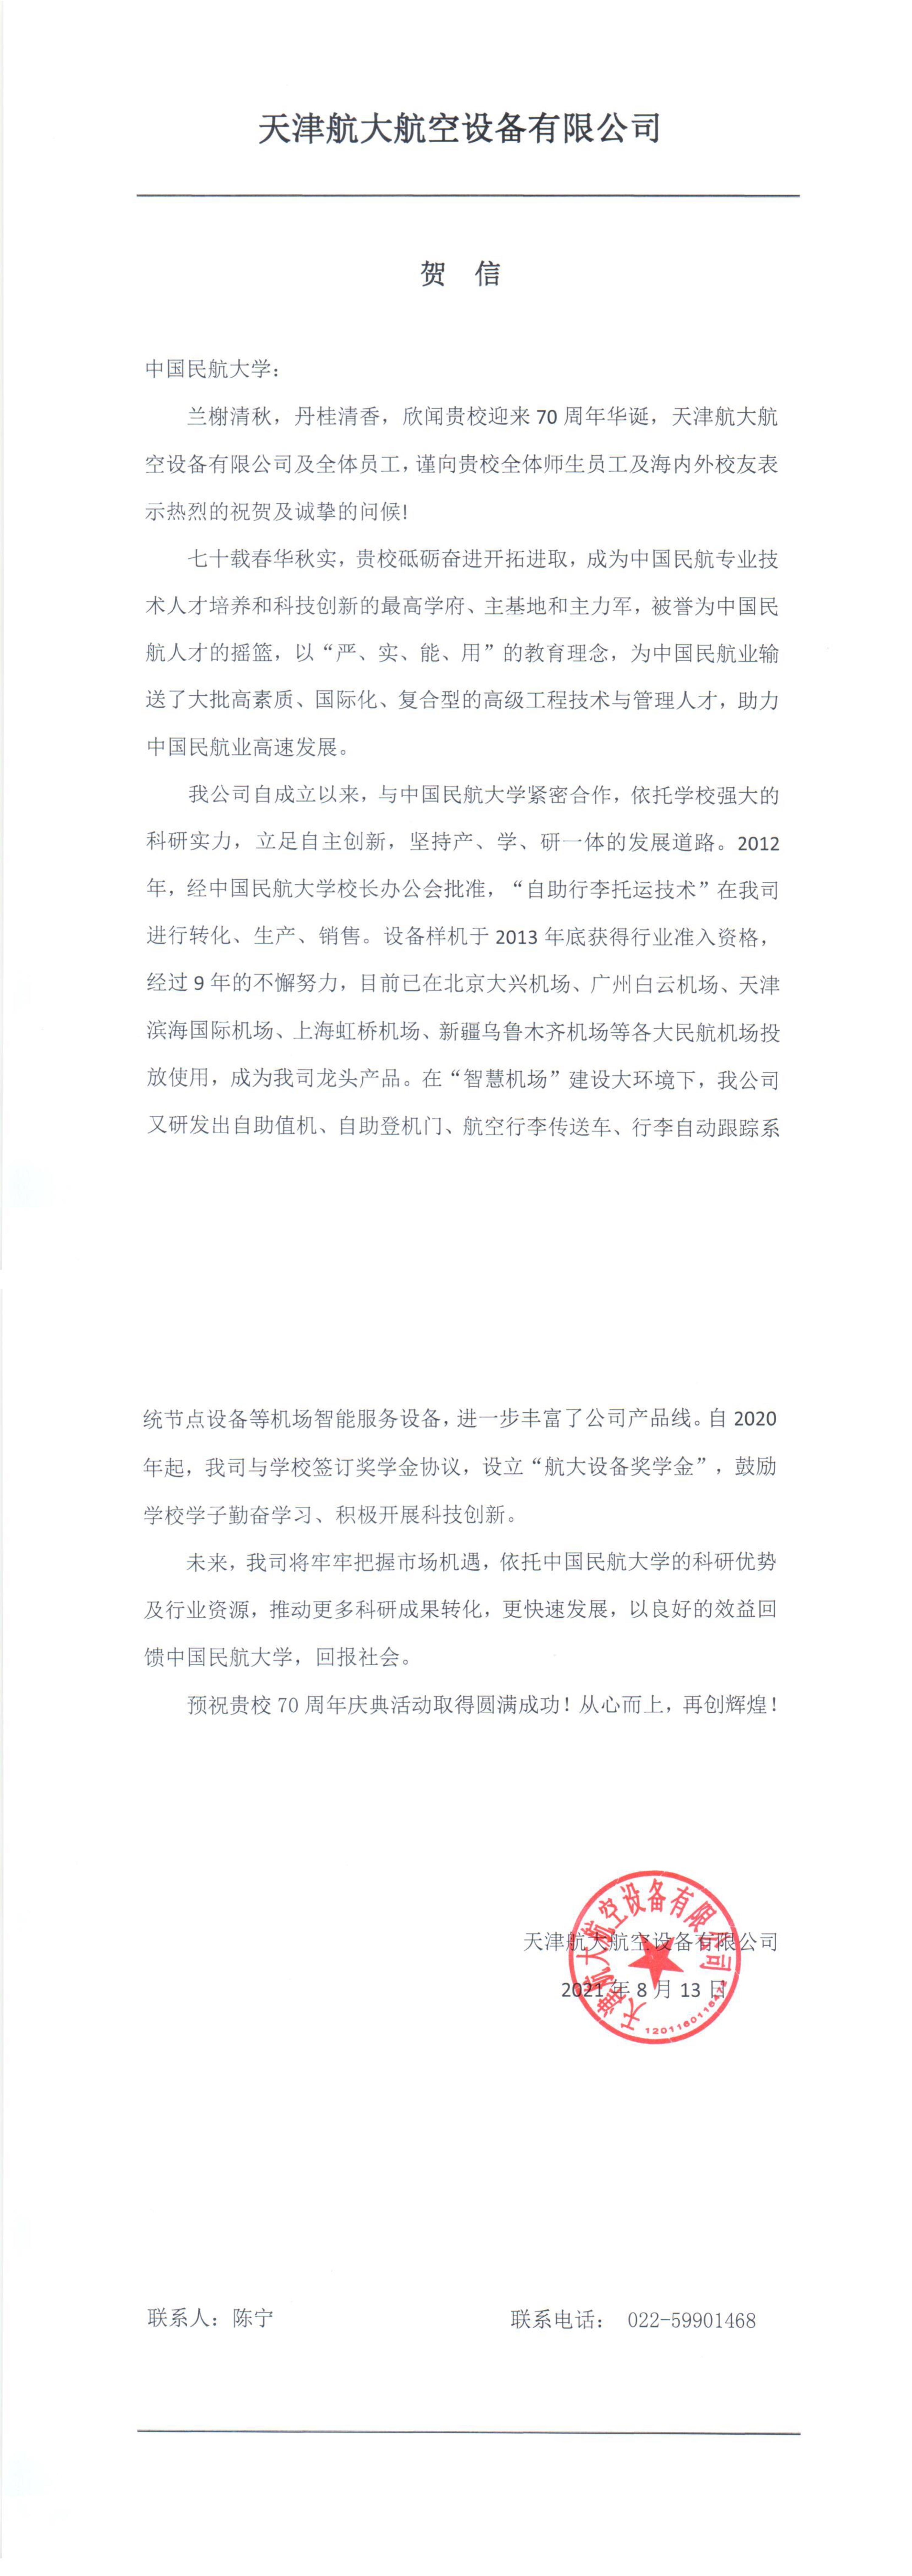 【70周年校庆】天津航大航空设备有限公司发来贺信